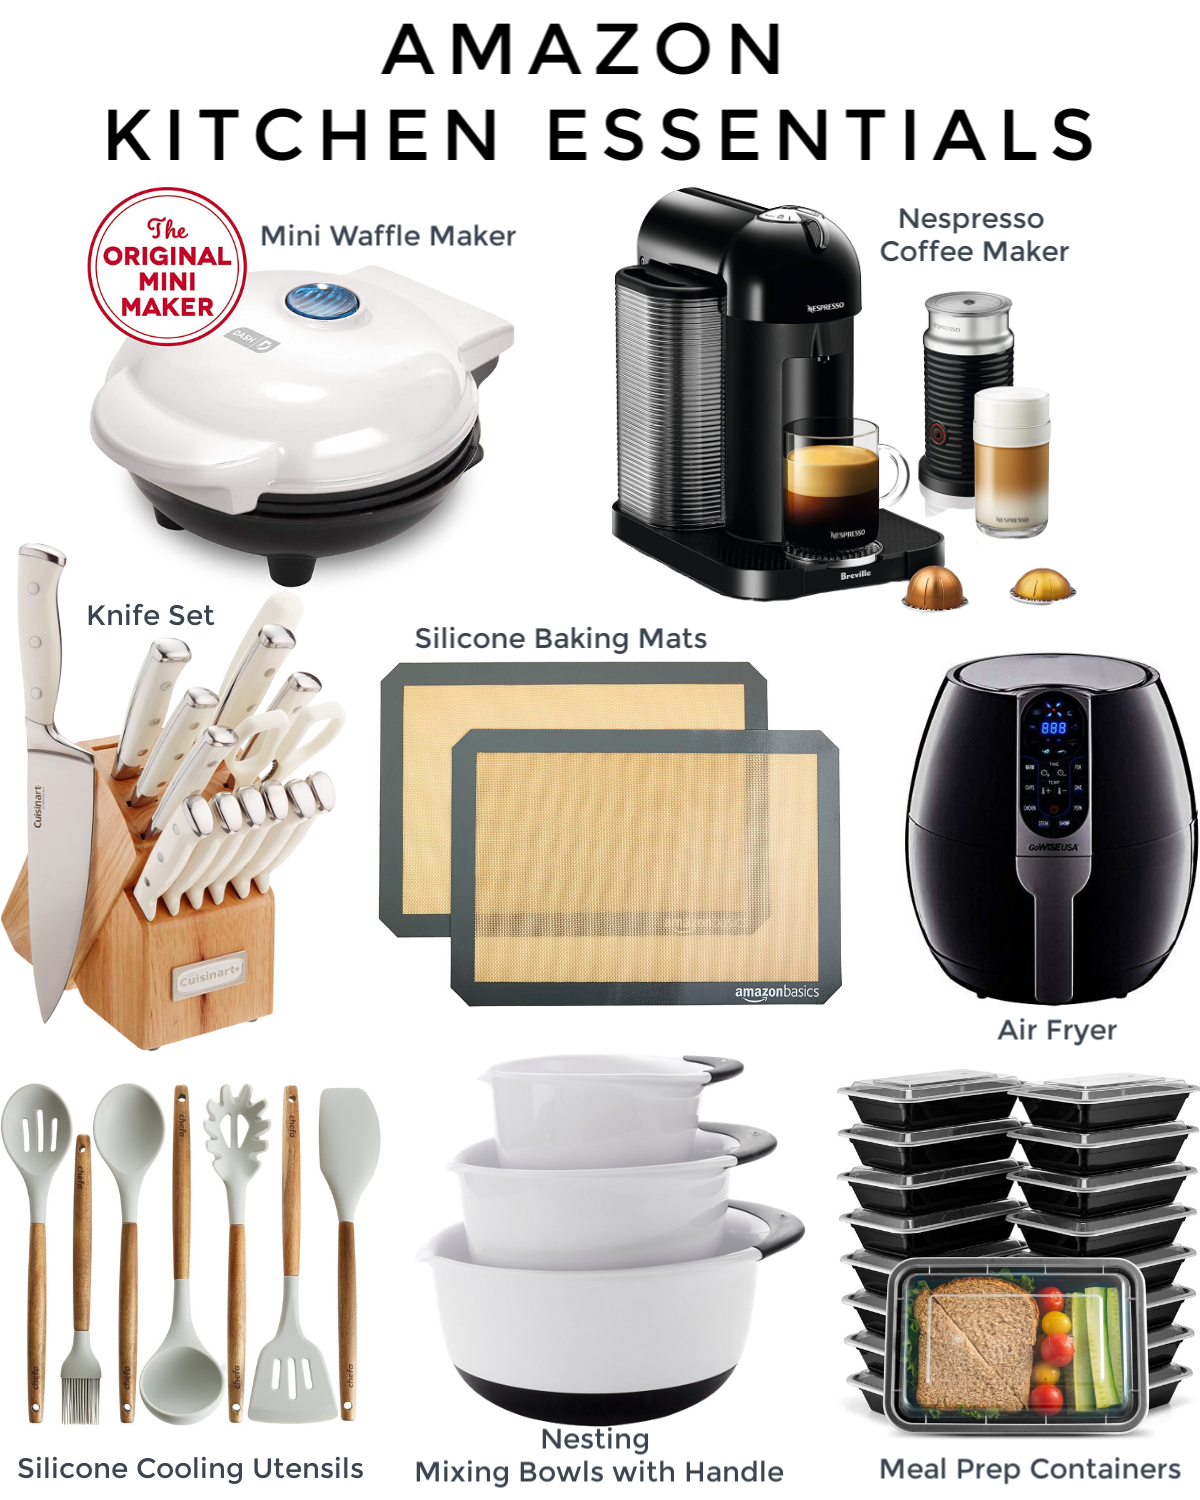 Amazon Kitchen Essentials.4